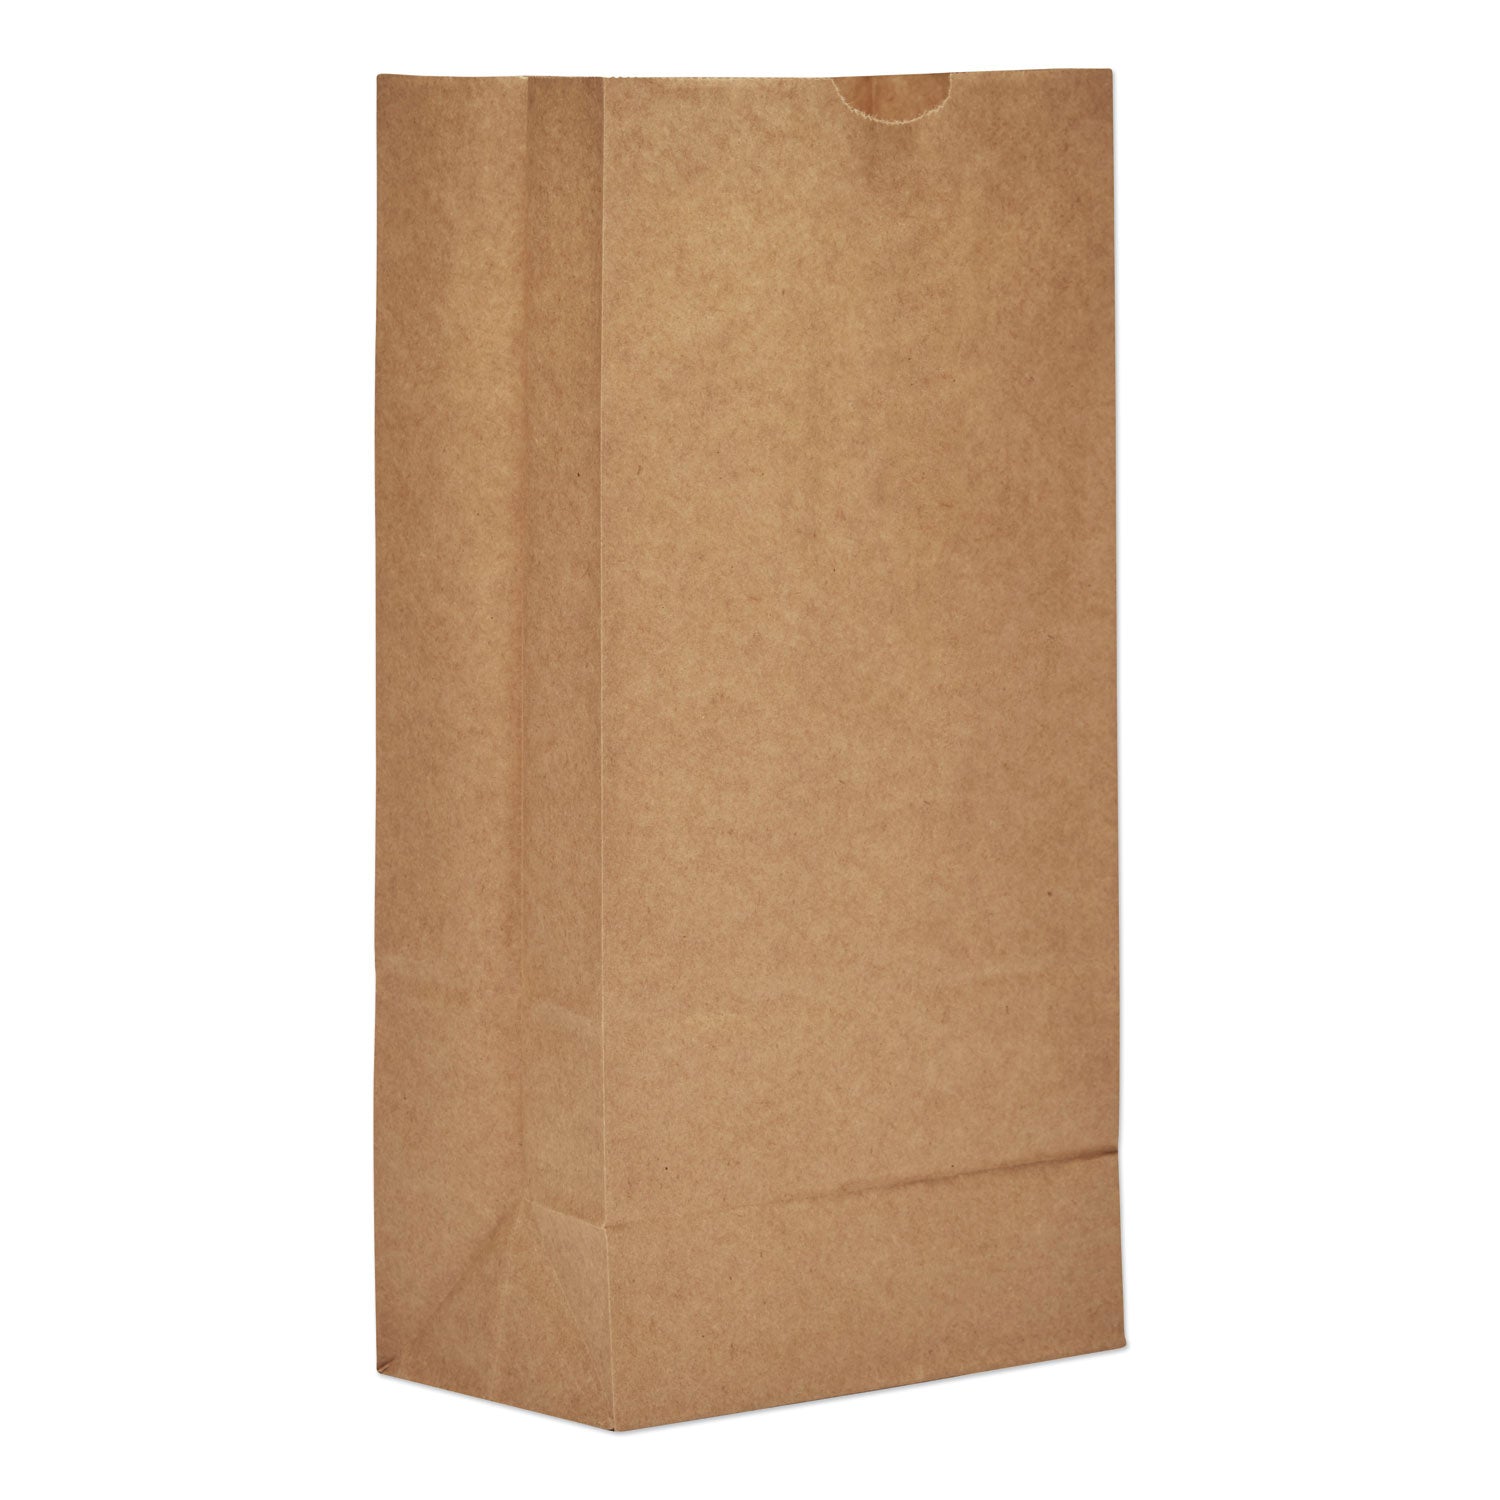 grocery-paper-bags-35-lb-capacity-#8-613-x-417-x-1244-kraft-2000-bags_baggk8 - 1